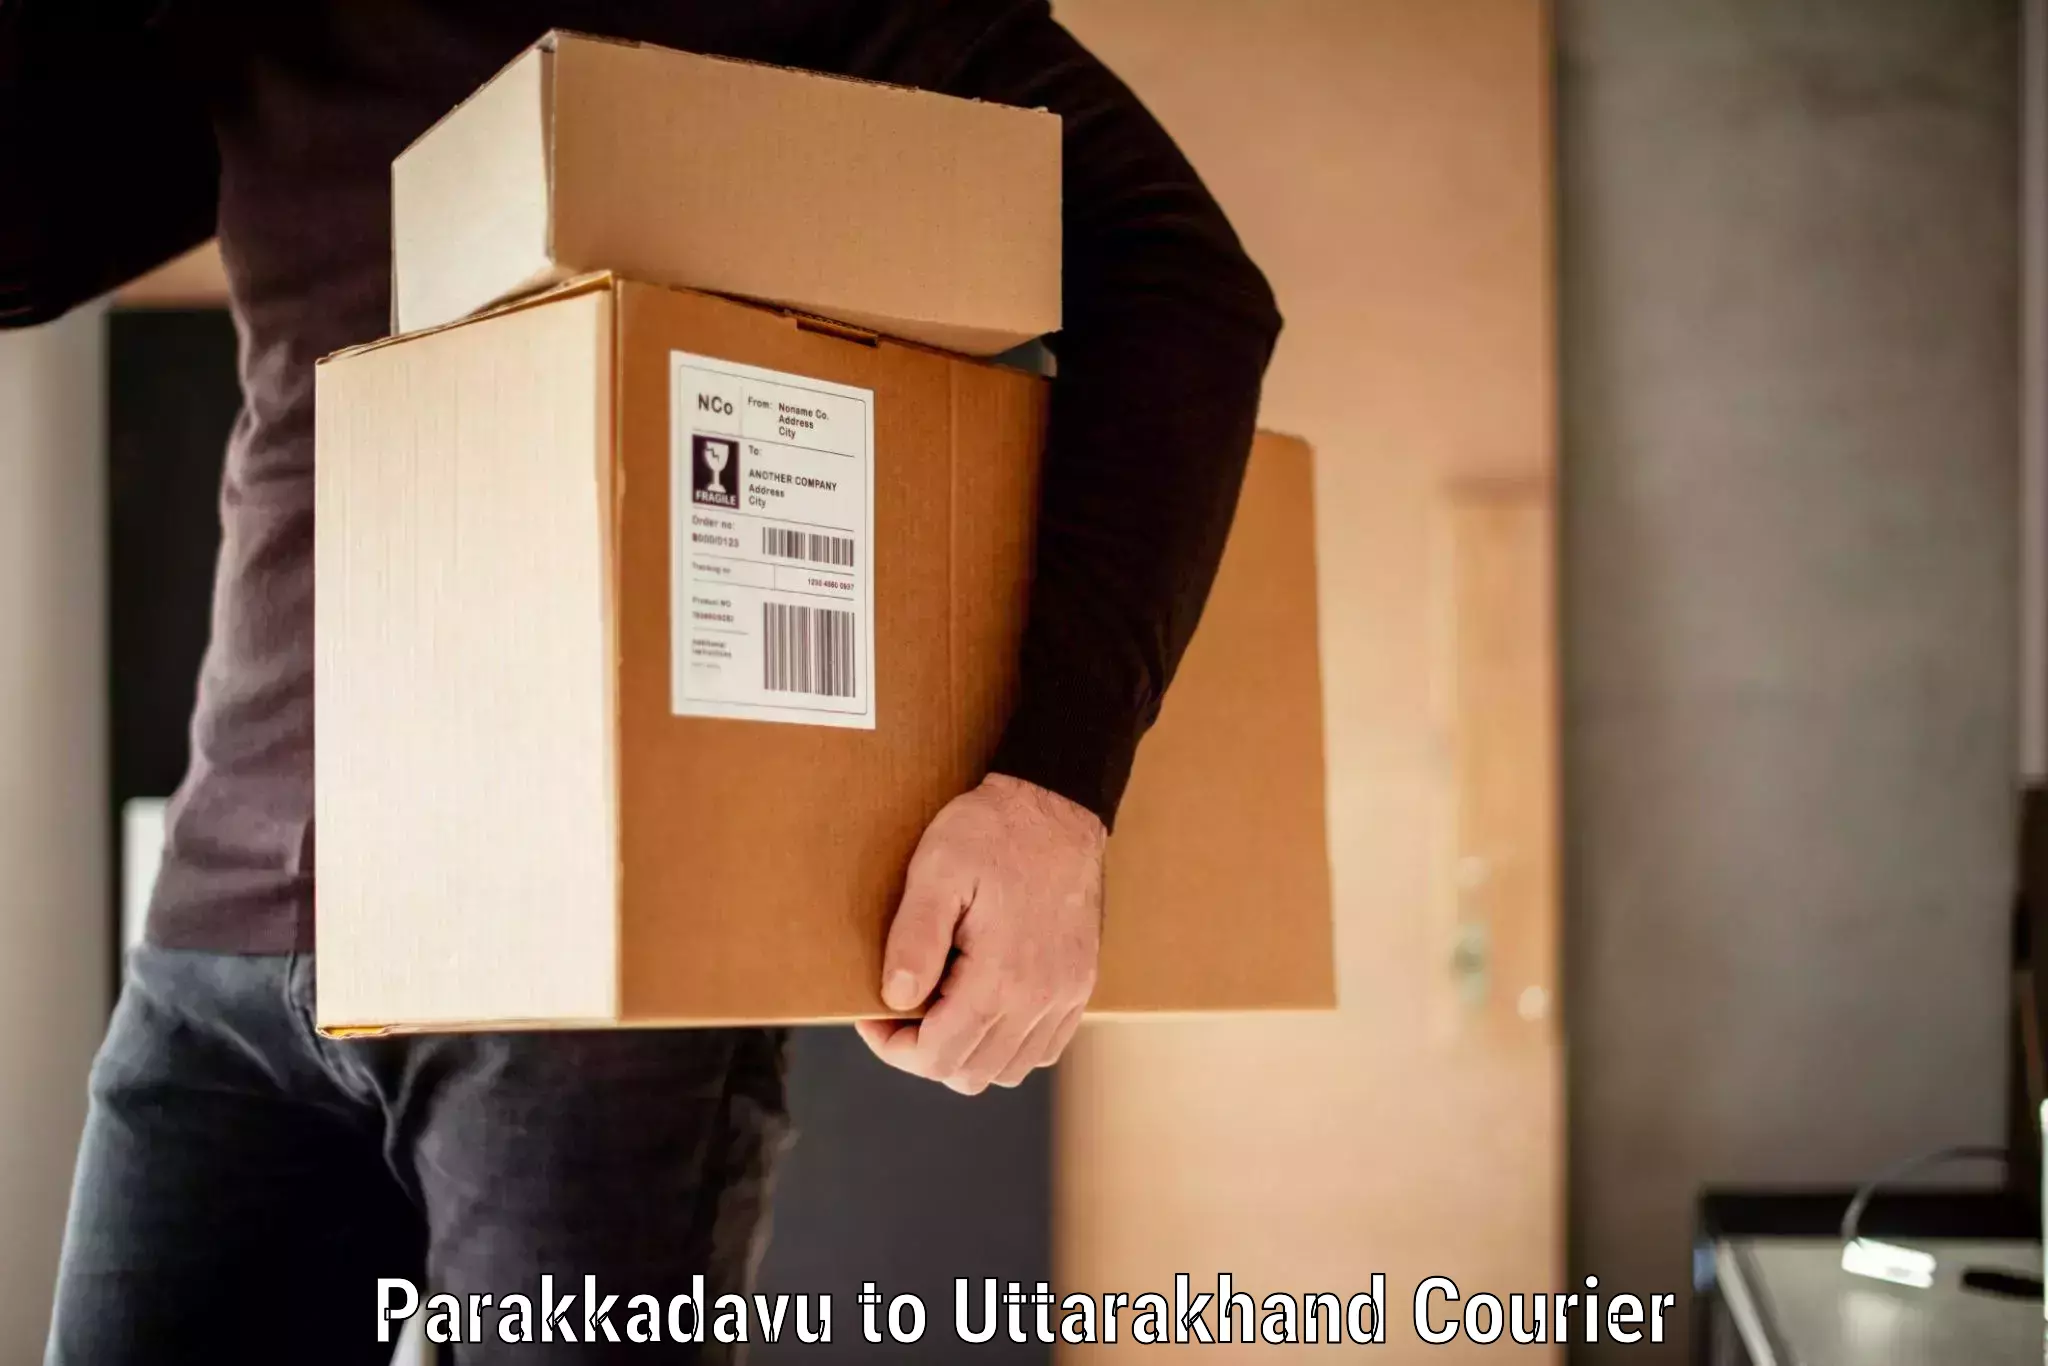 Baggage delivery planning Parakkadavu to Gopeshwar